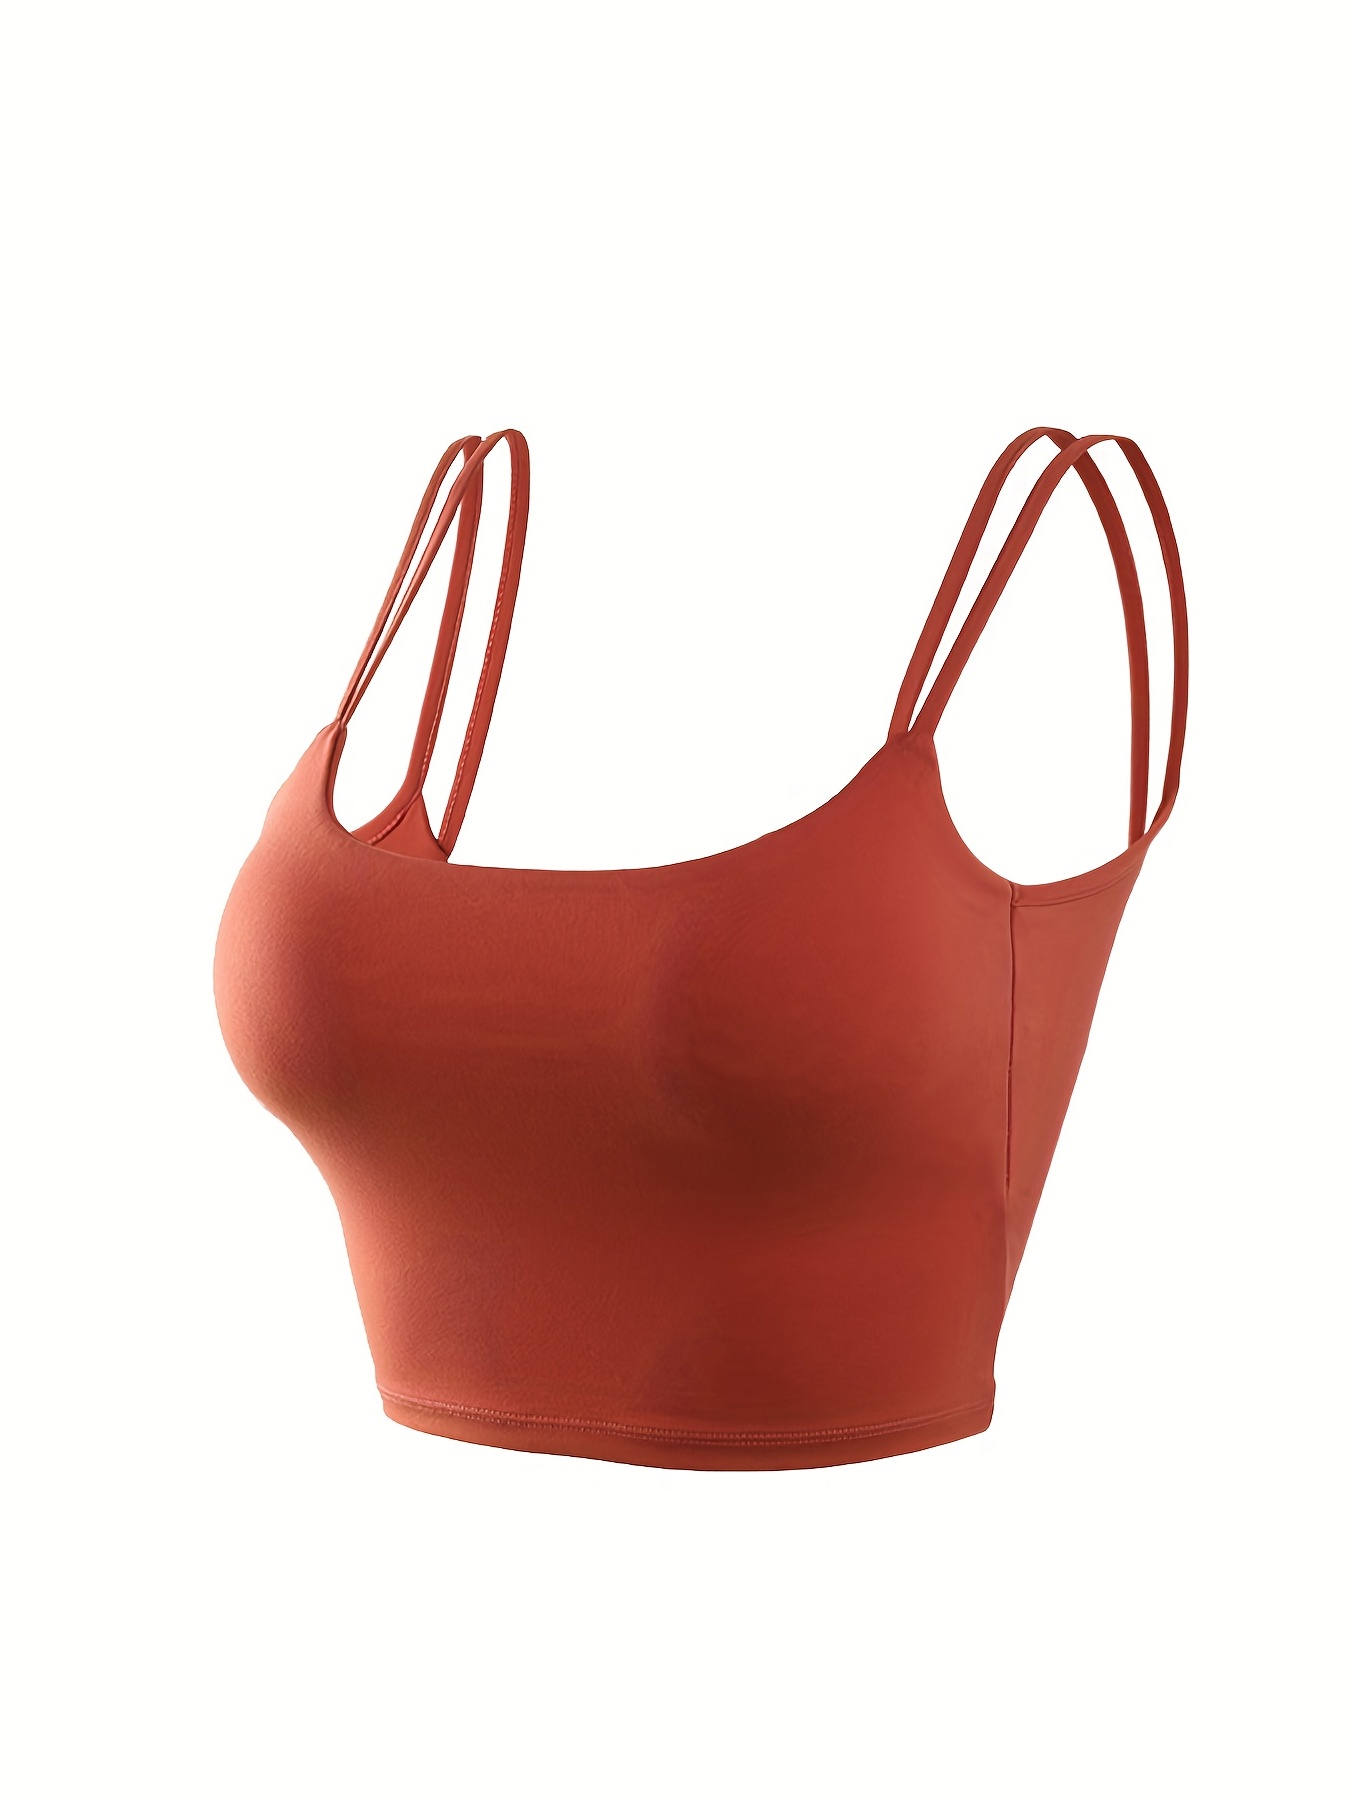 UrKeuf Women's Workout Sports Bras Fitness Padded Backless Twist Cross Back  Yoga Crop Cute Tank Top